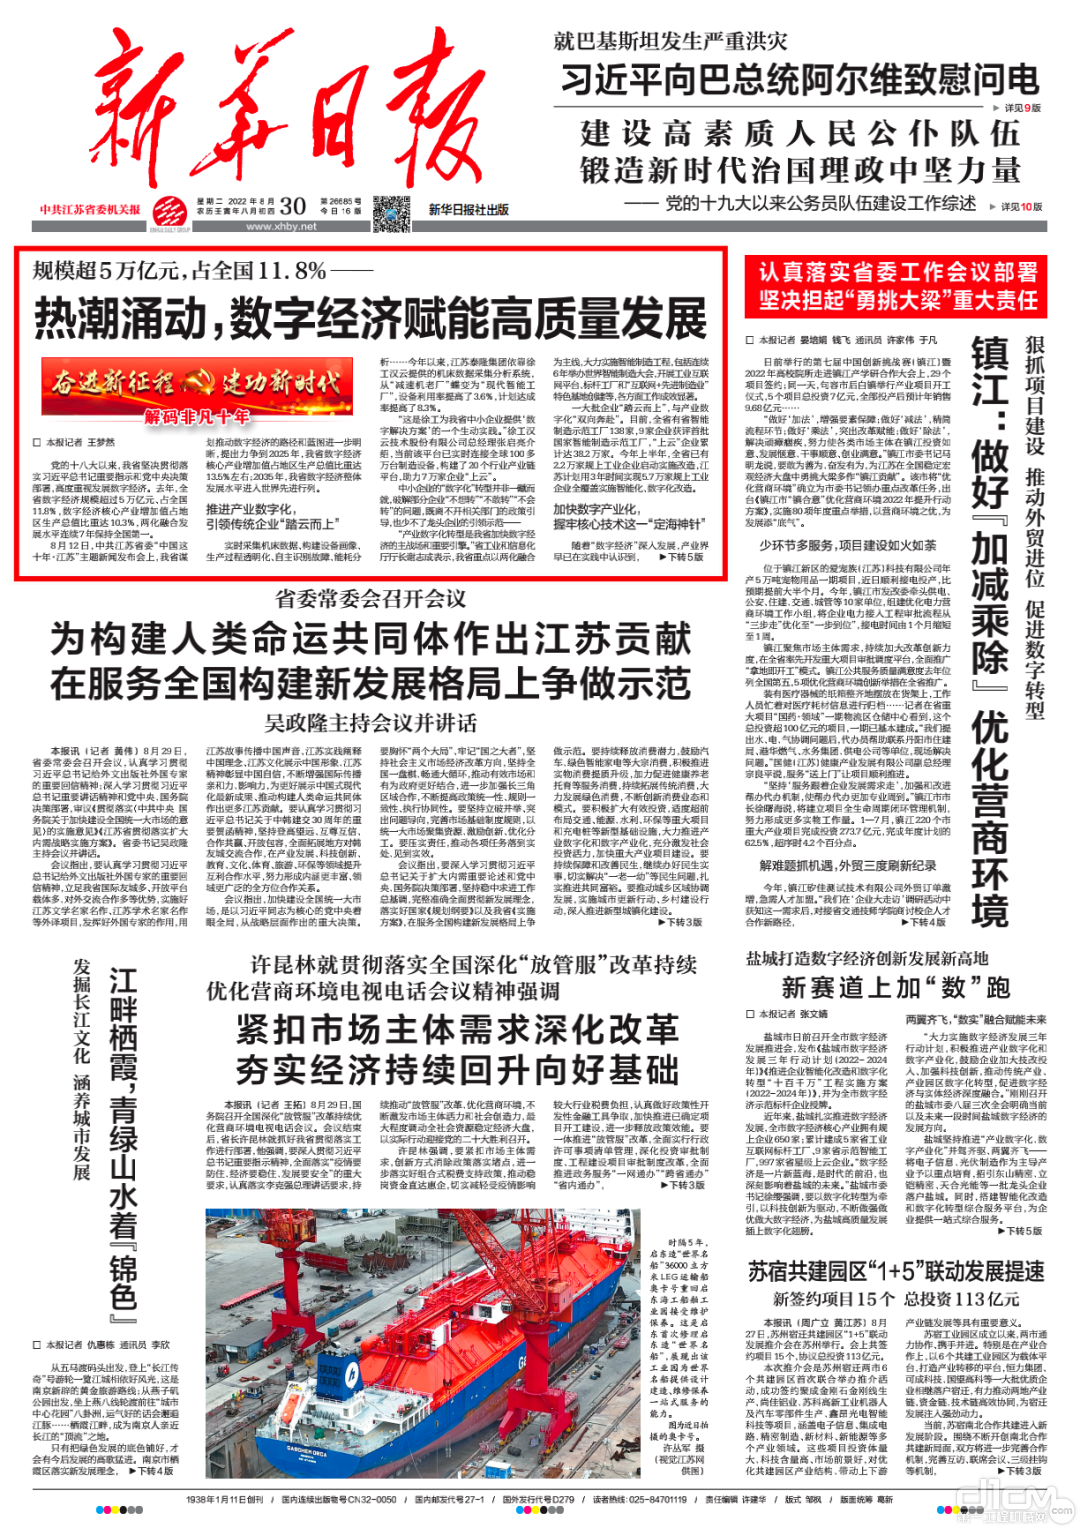 《新华日报》对江苏省数字经济发展现状及未来方向进行专题报道